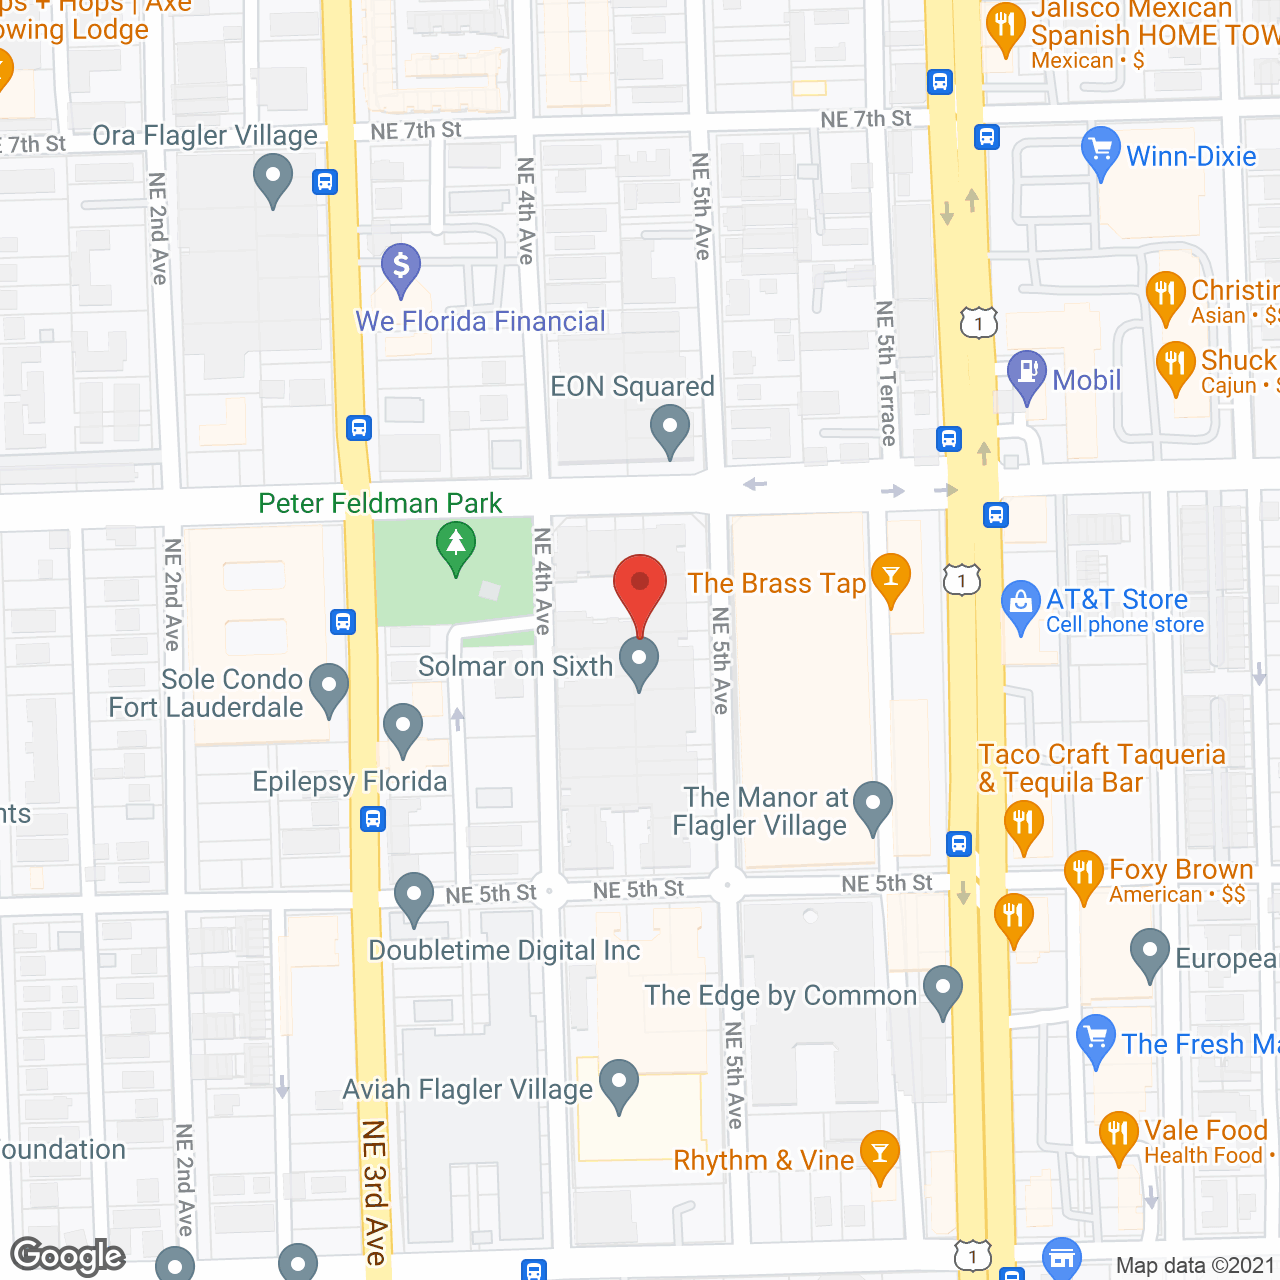 Fort Lauderdale Flagler Village in google map